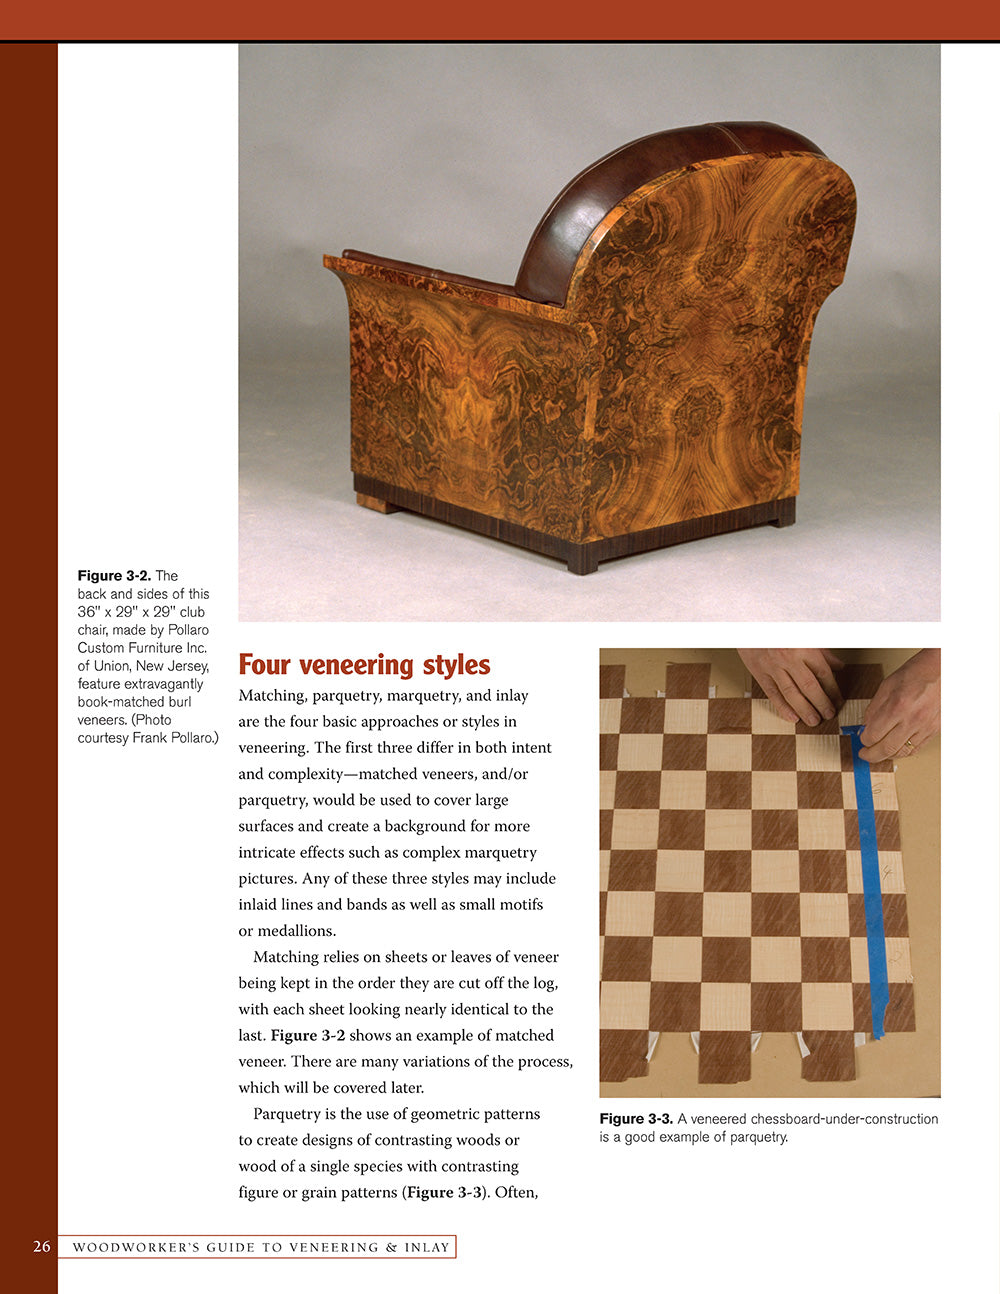 Woodworker's Guide to Veneering & Inlay